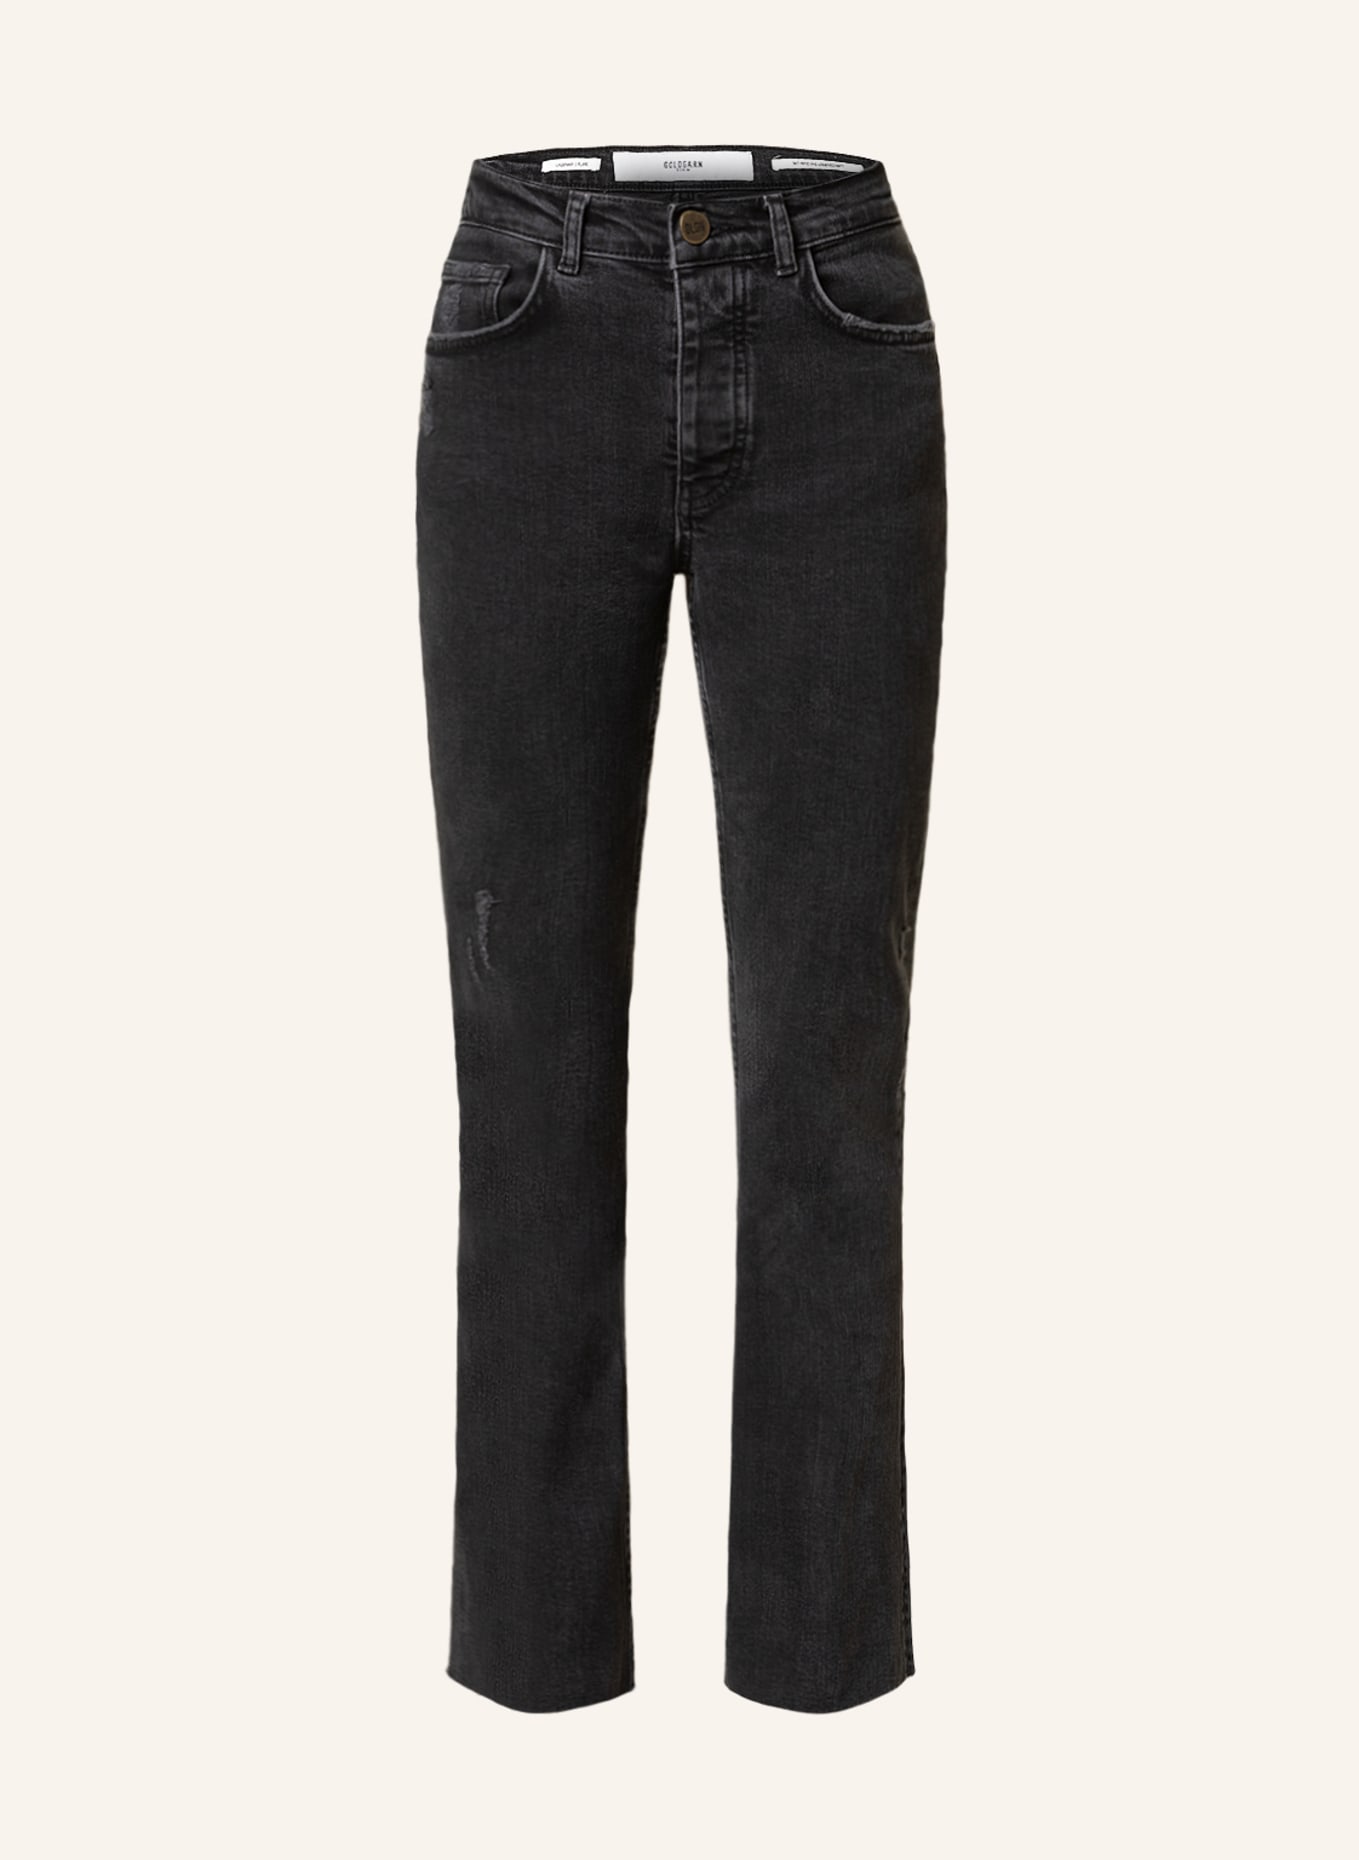 GOLDGARN DENIM Flared jeans LINDENHOF, Color: 1110  vintage black (Image 1)